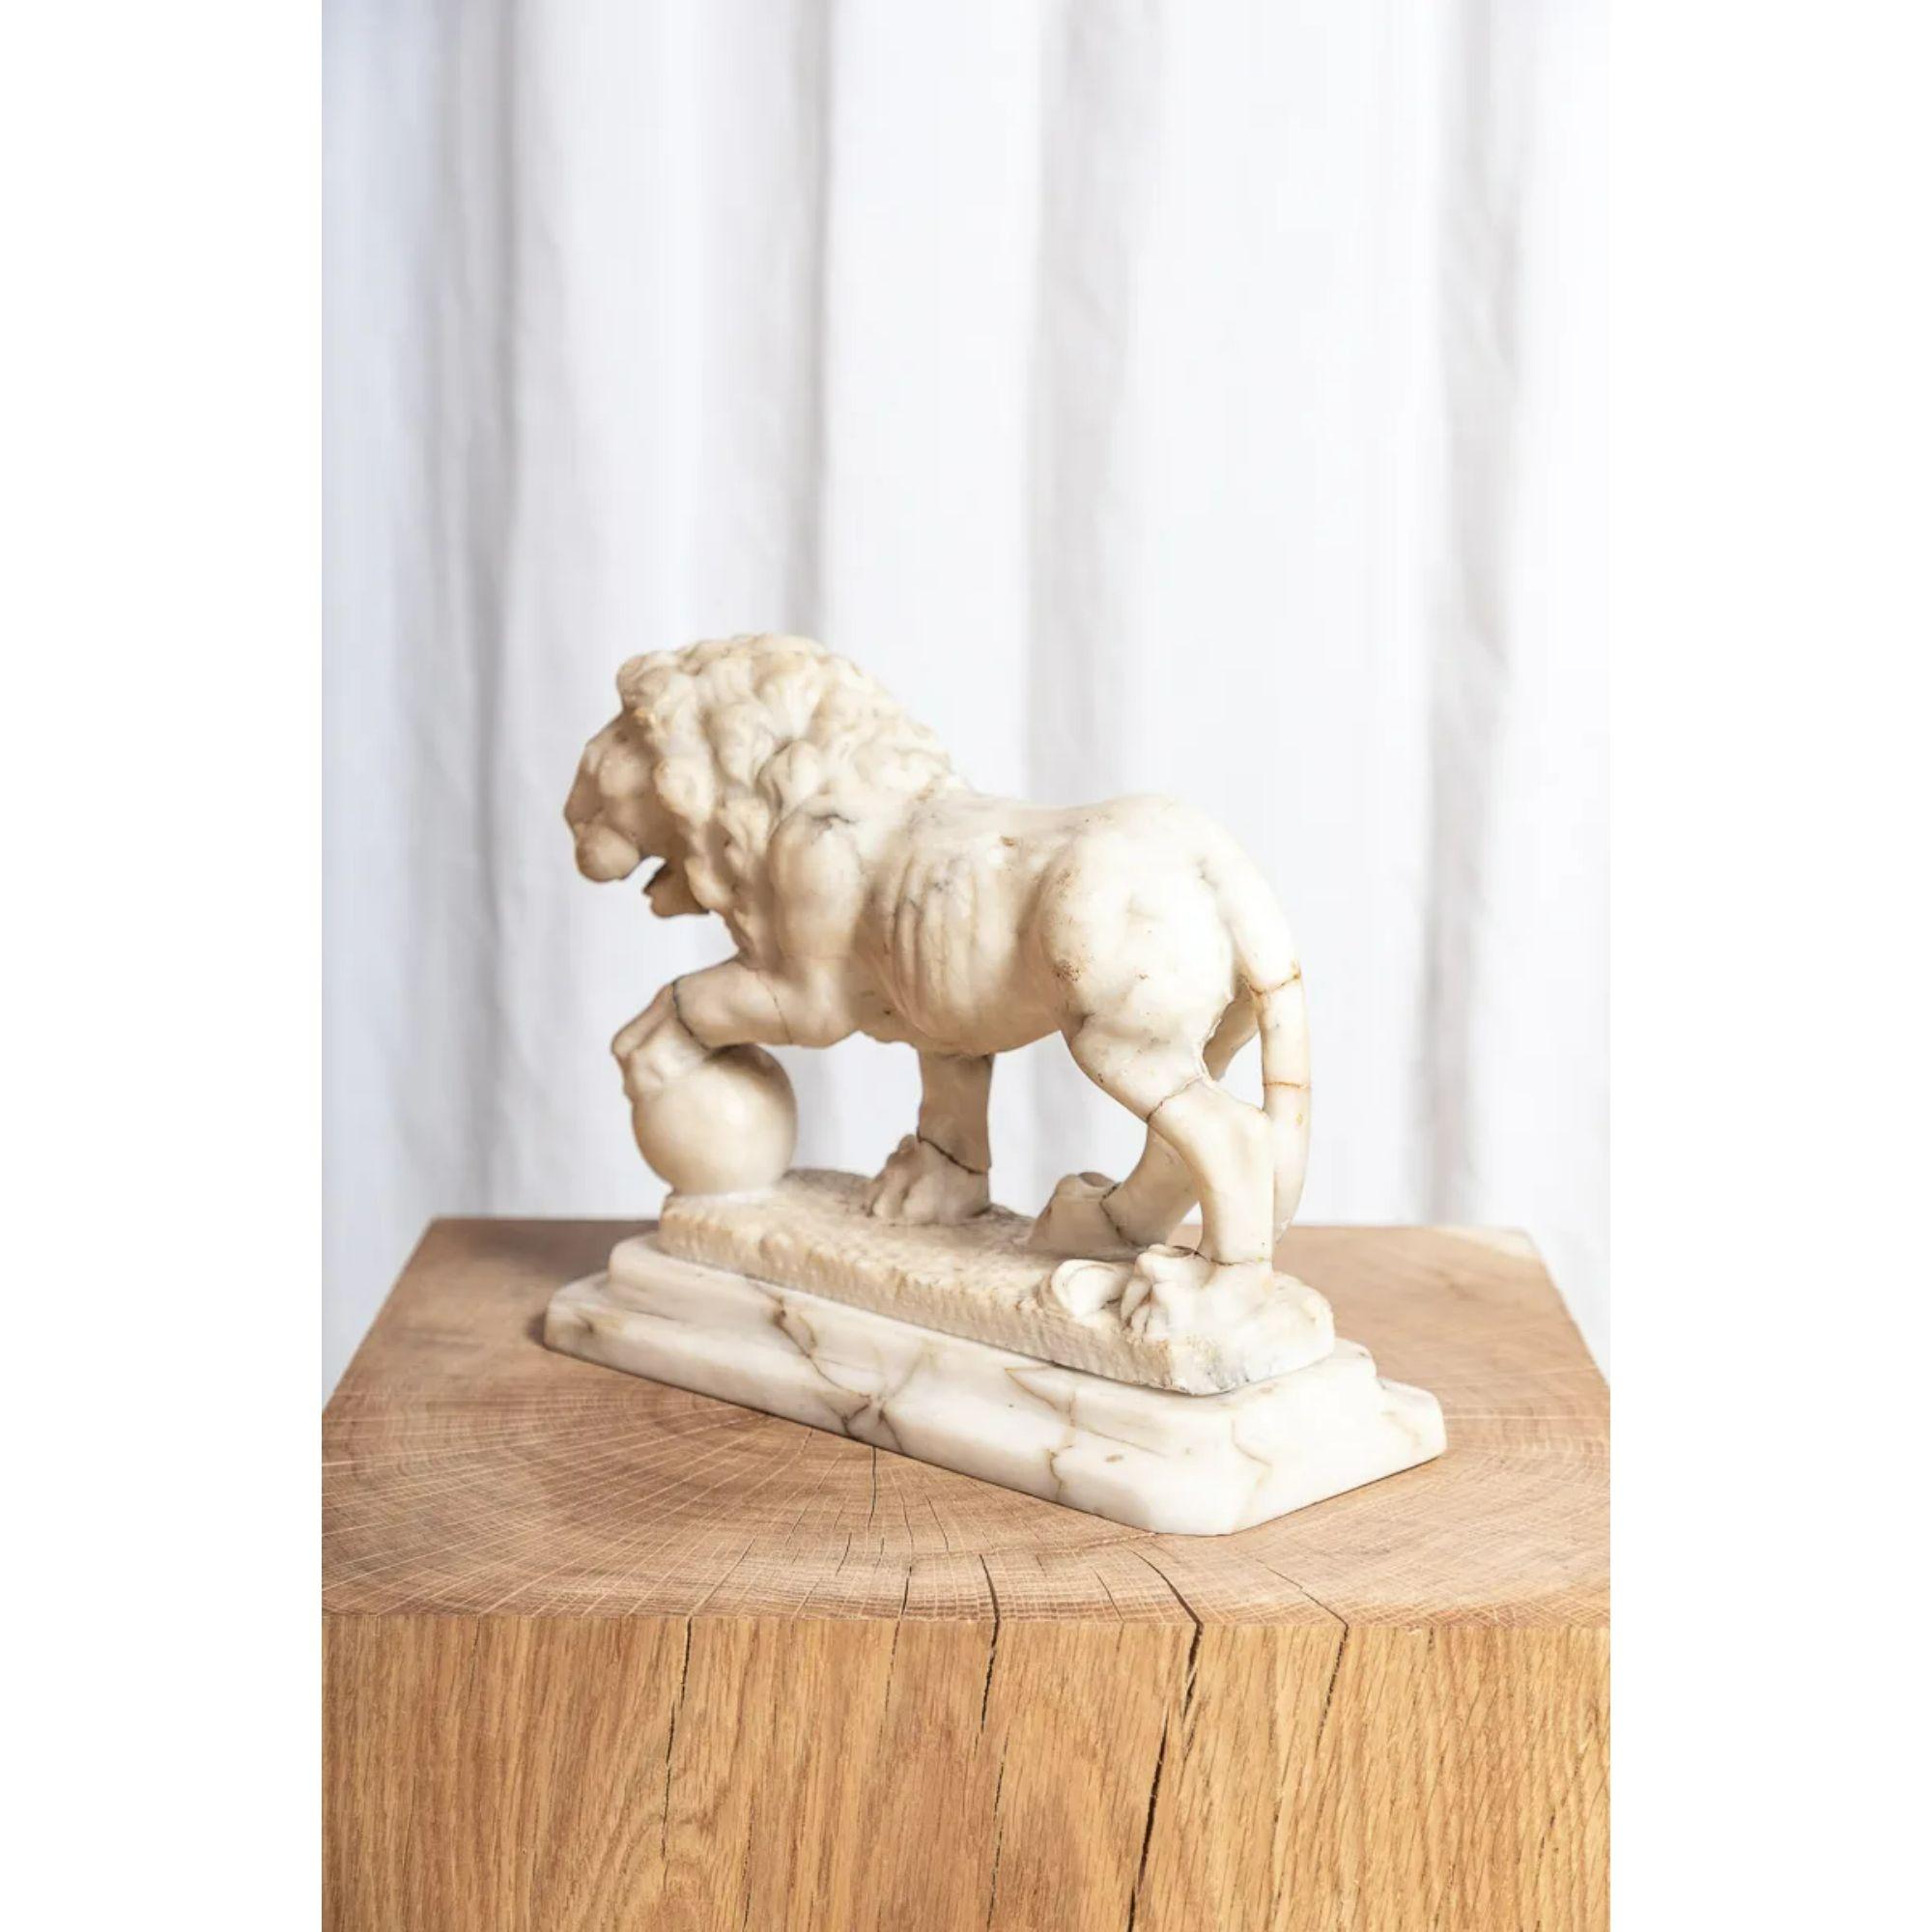 Figurine italienne en albâtre représentant le lion des Médicis

Sculpture souvenir du 